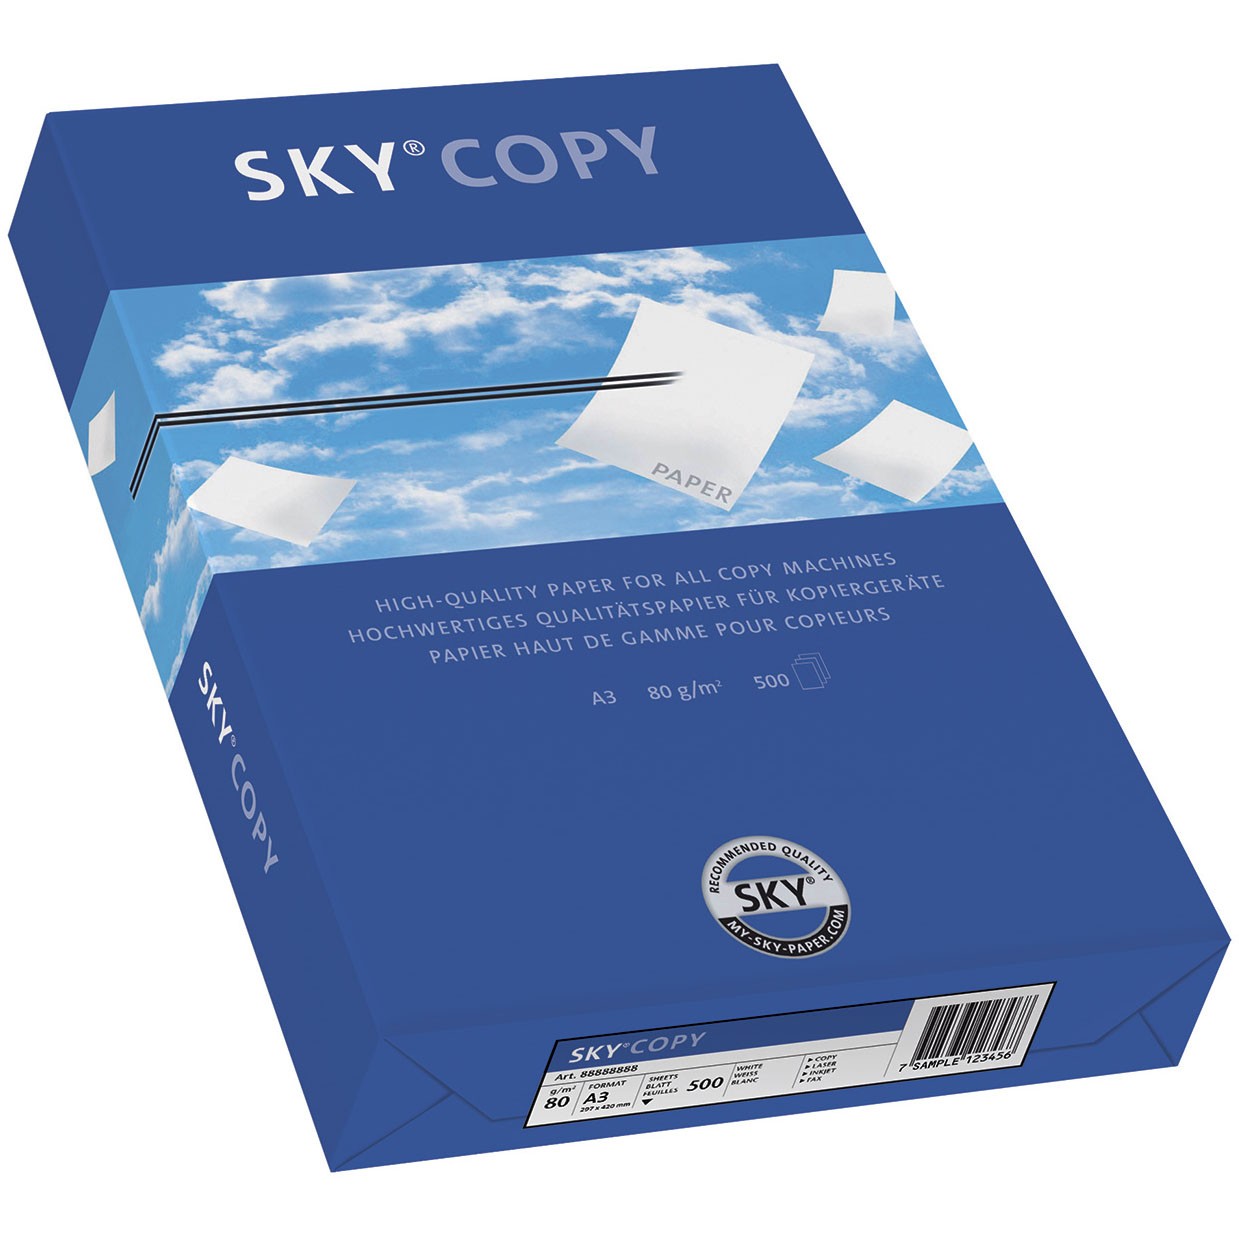 Sky® Copy kopipapir 80g A3 hvid 500 ark